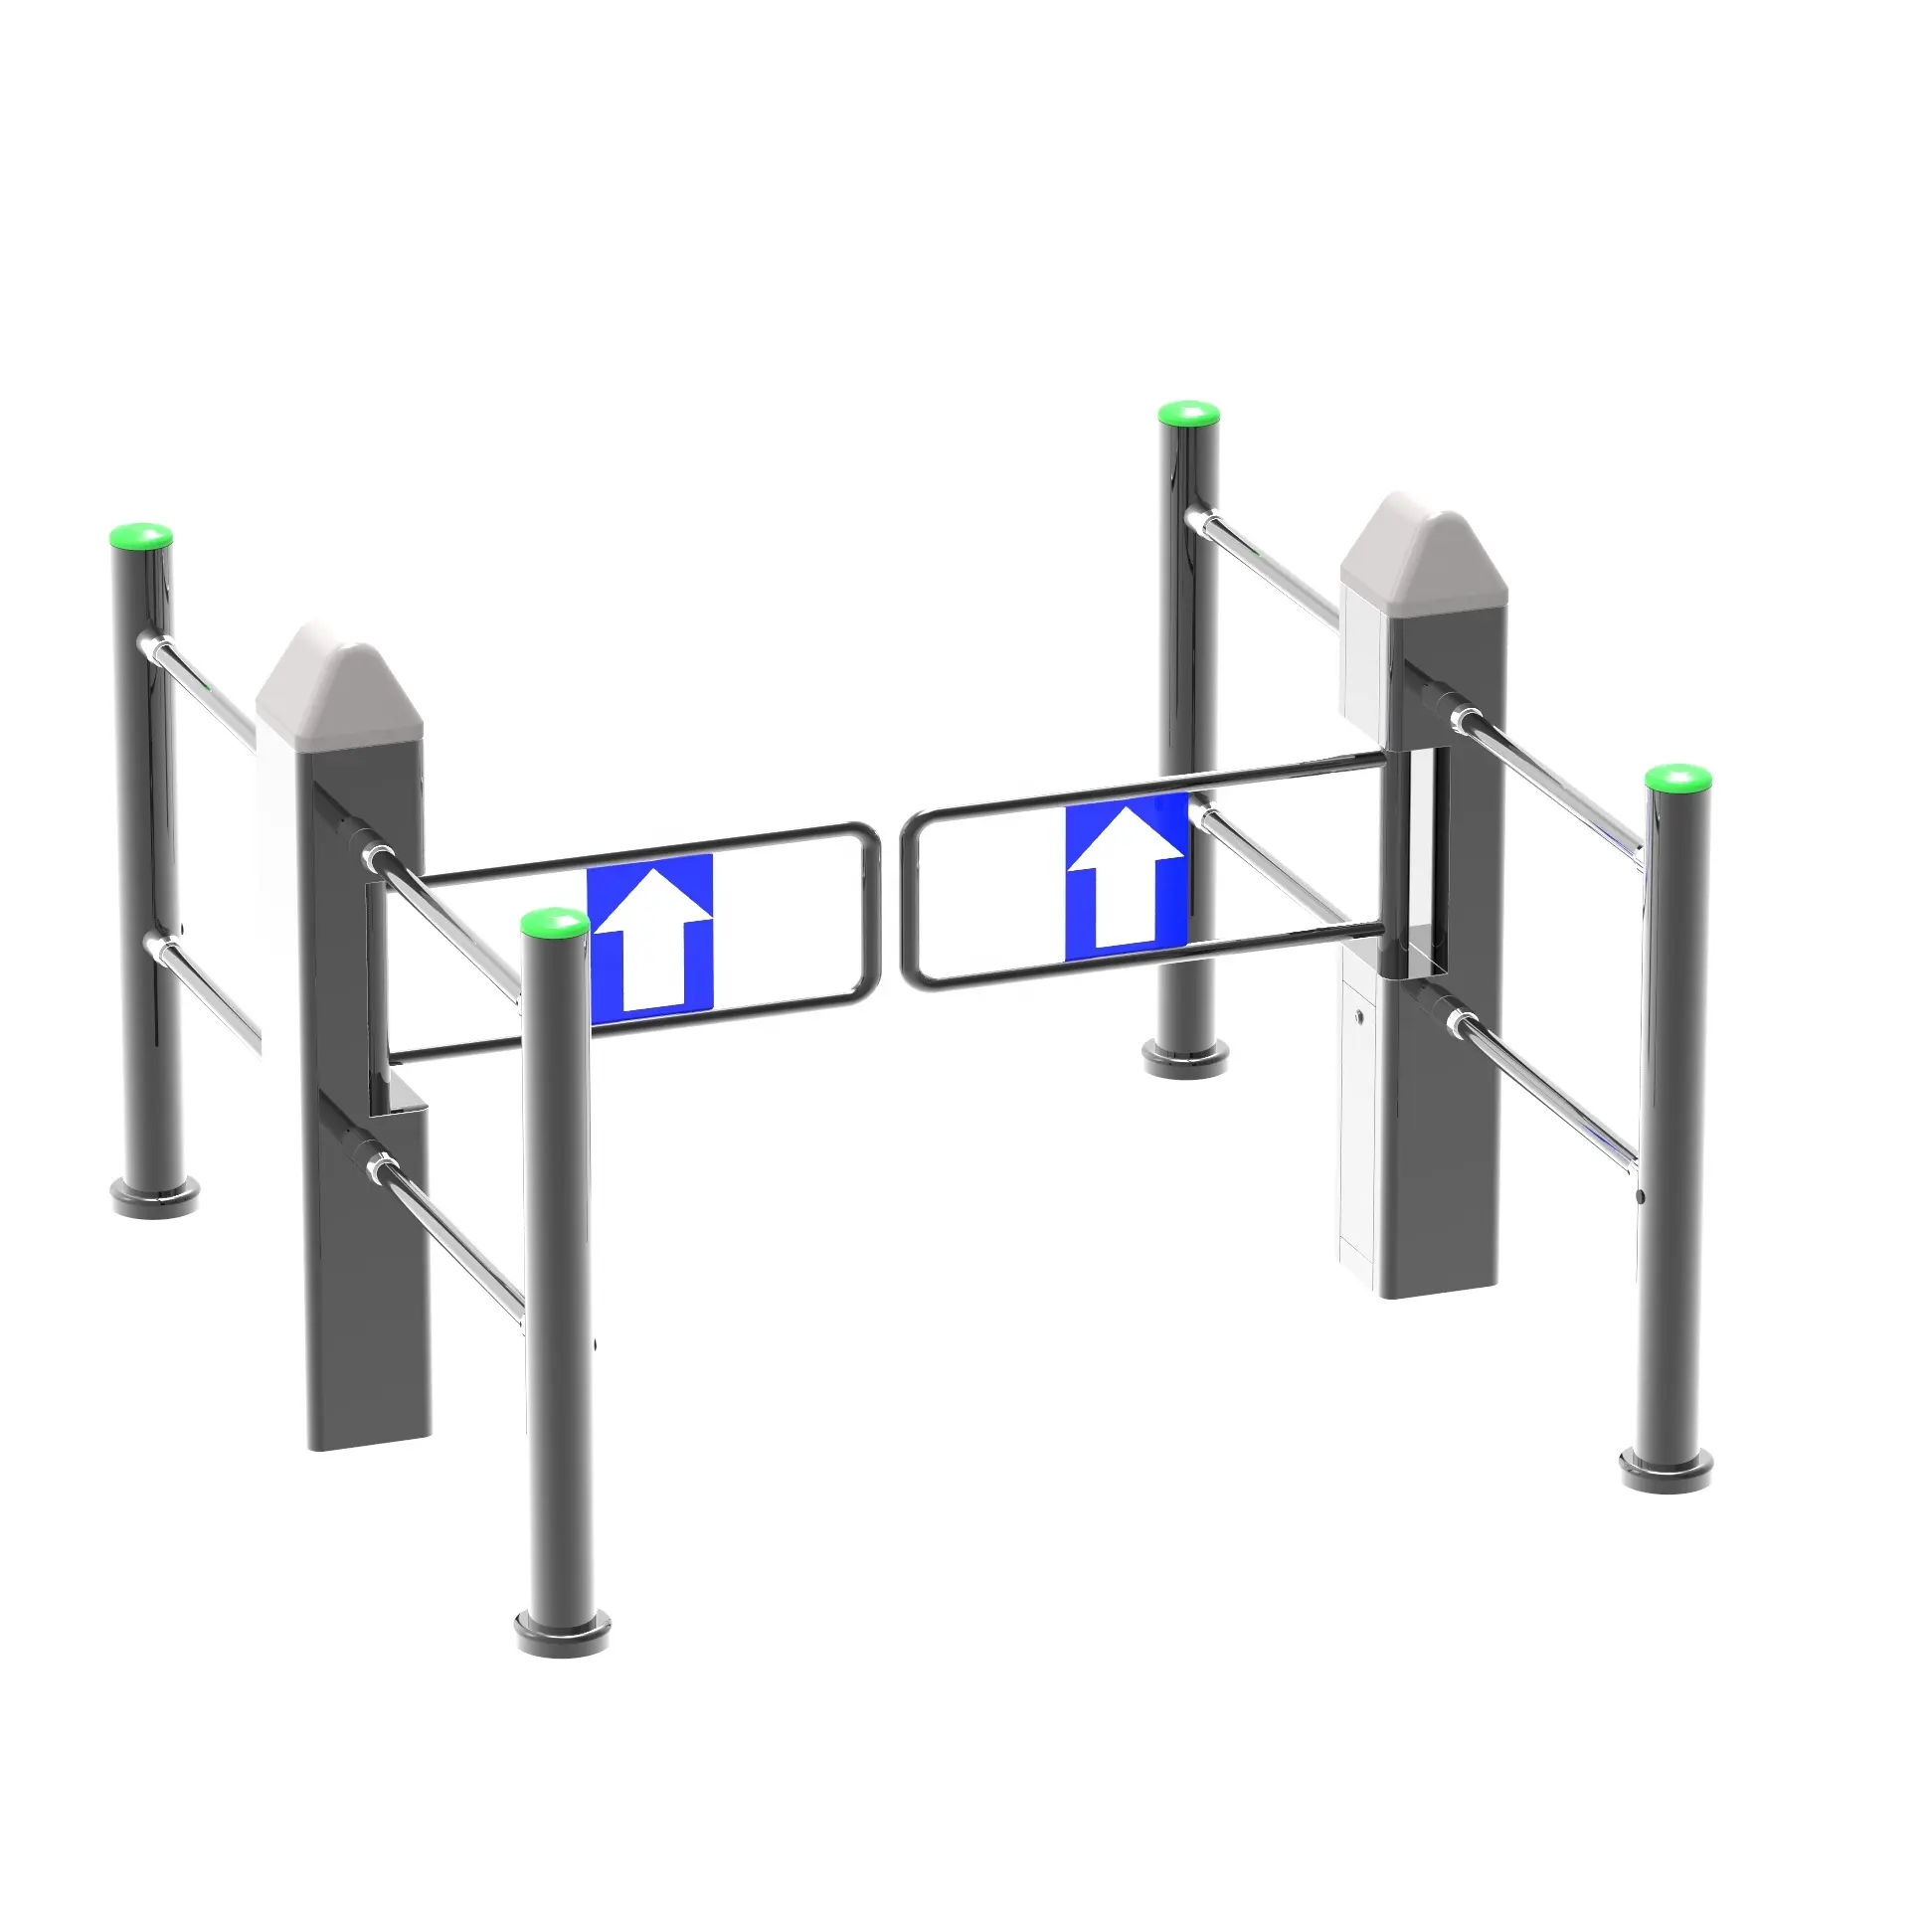 Cancello della barriera dell'oscillazione di automazione del supermercato del palo del cilindro, cancello pedonale della barriera del gateway del carrello